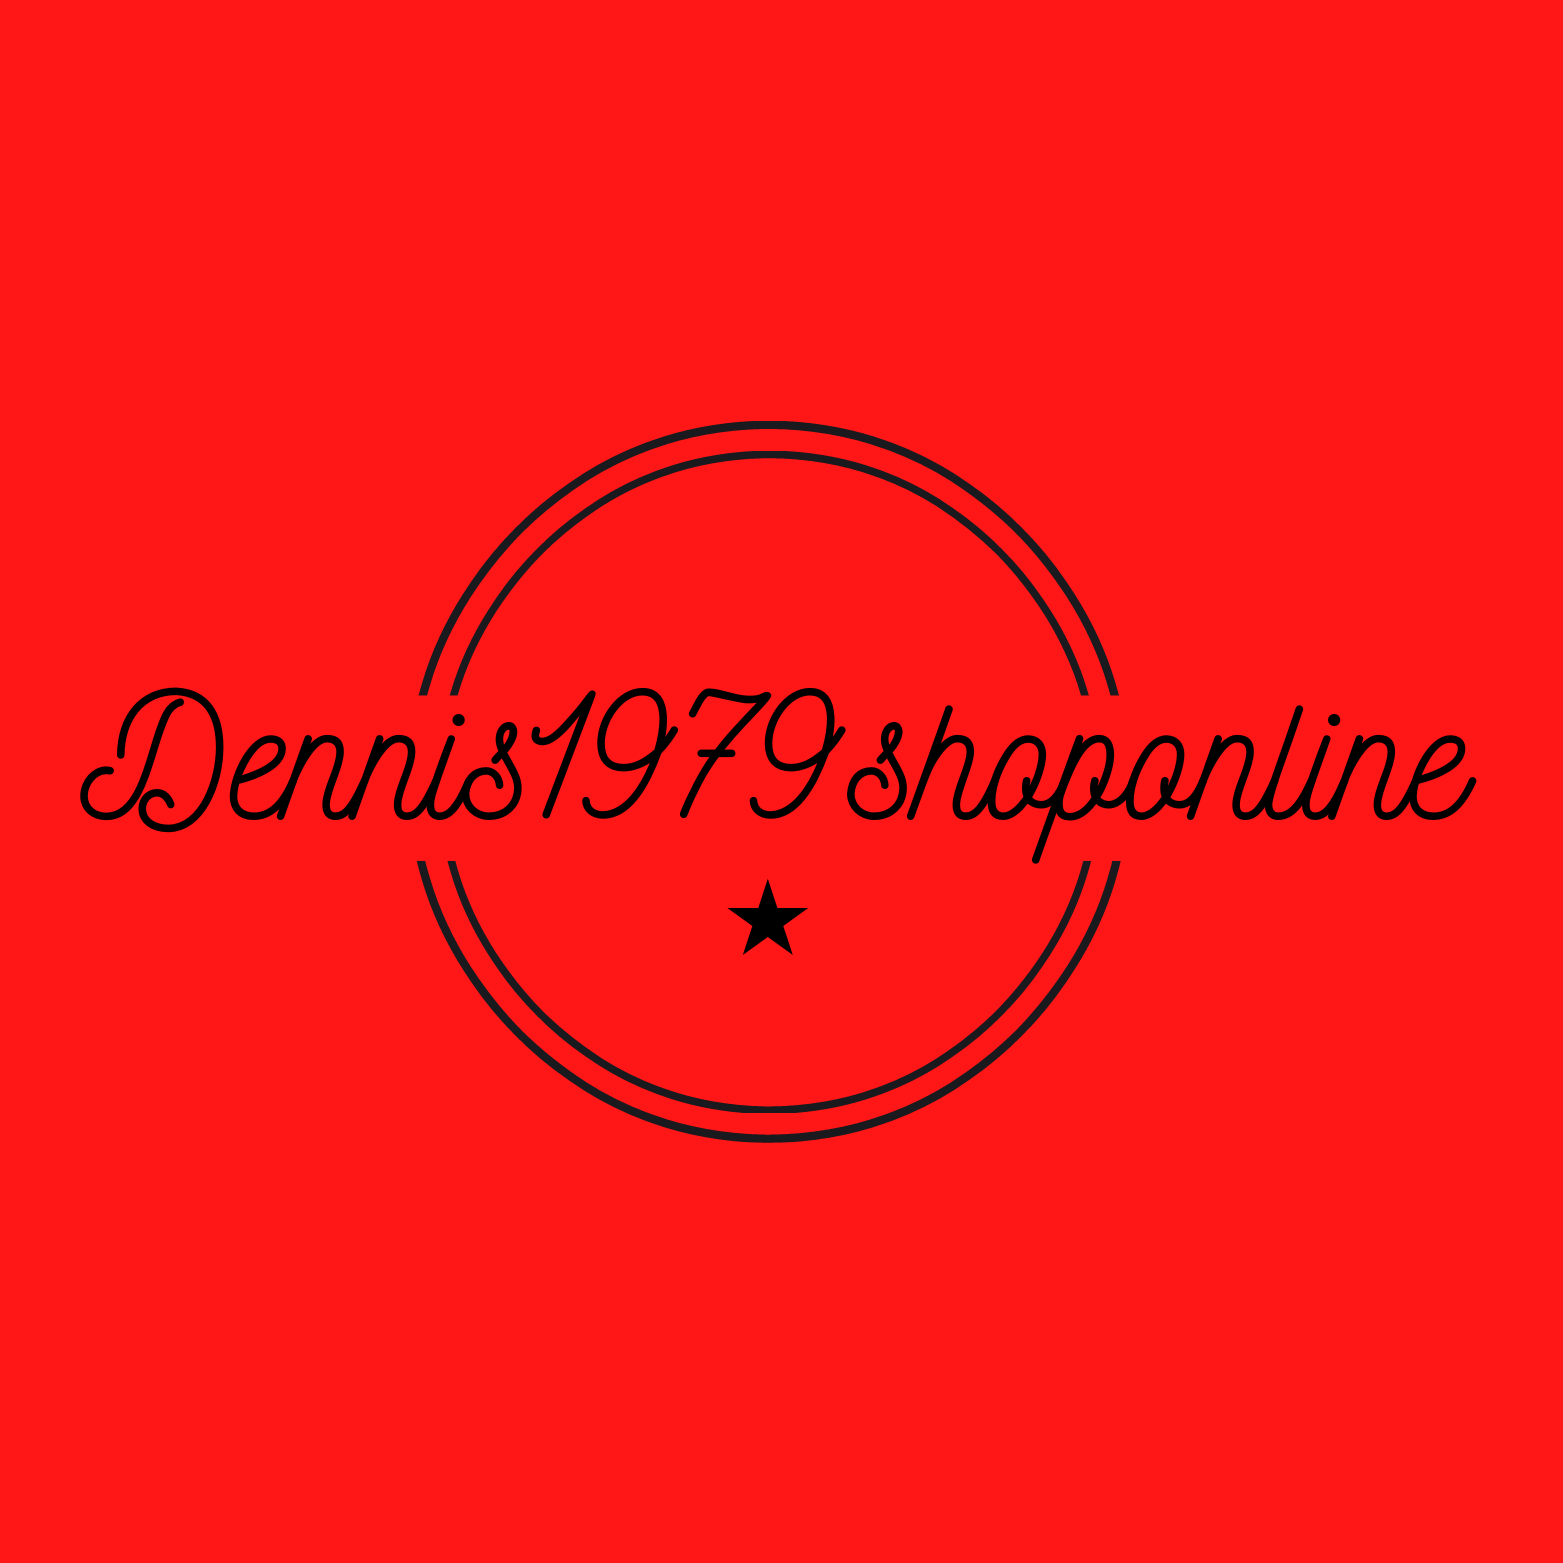 Dennis1979shoponline